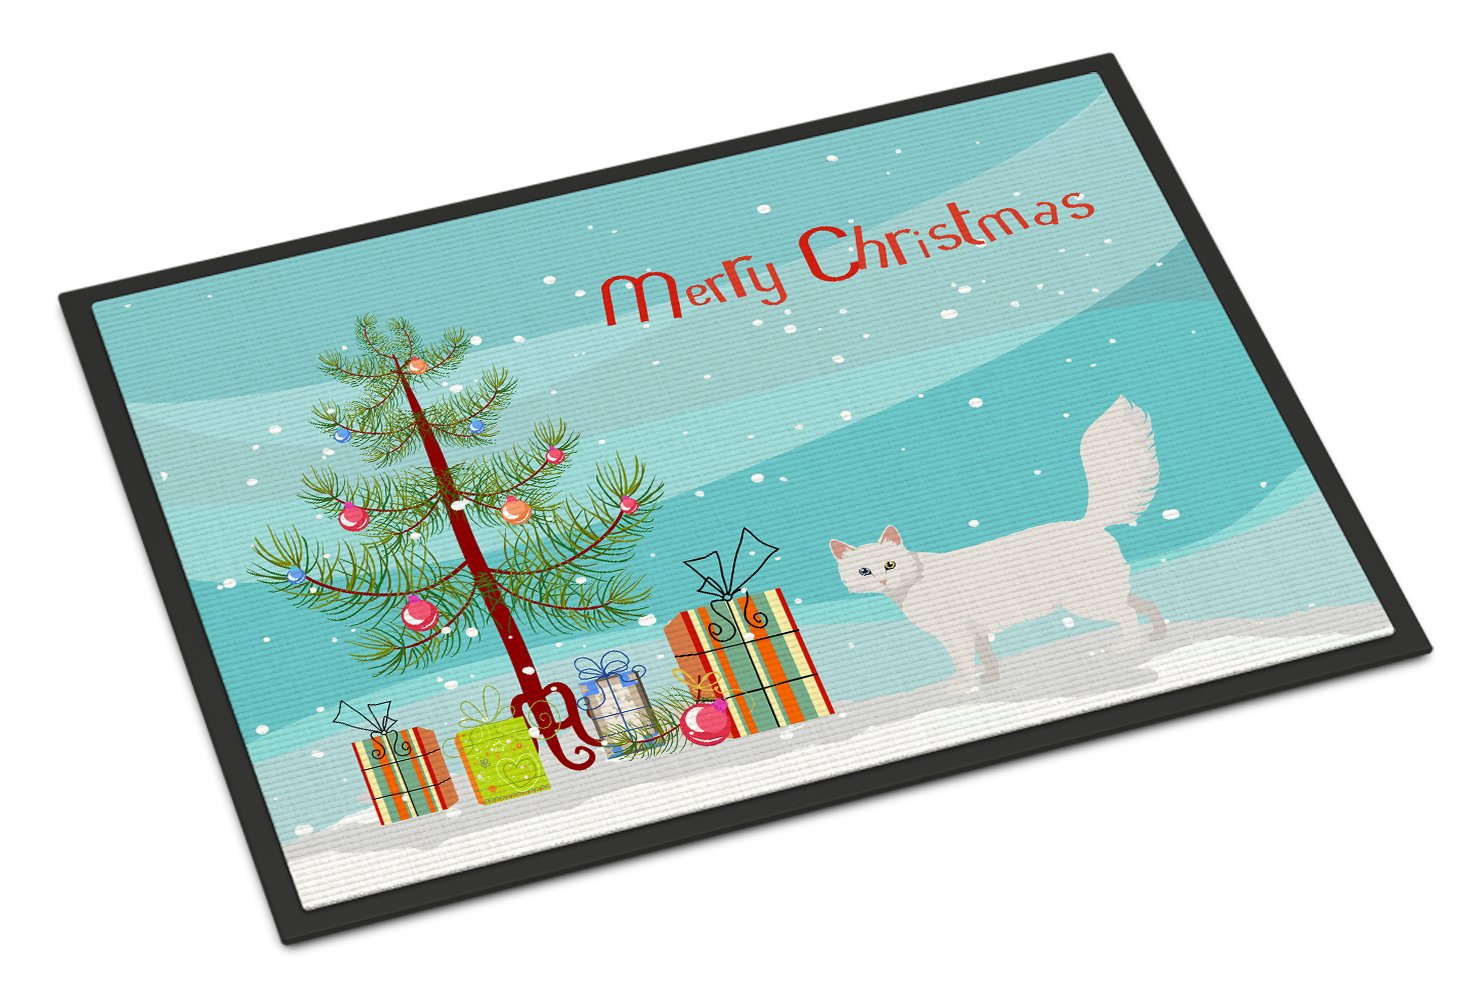 Turkish Angora Cat Merry Christmas Indoor or Outdoor Mat 24x36 CK4732JMAT by Caroline's Treasures